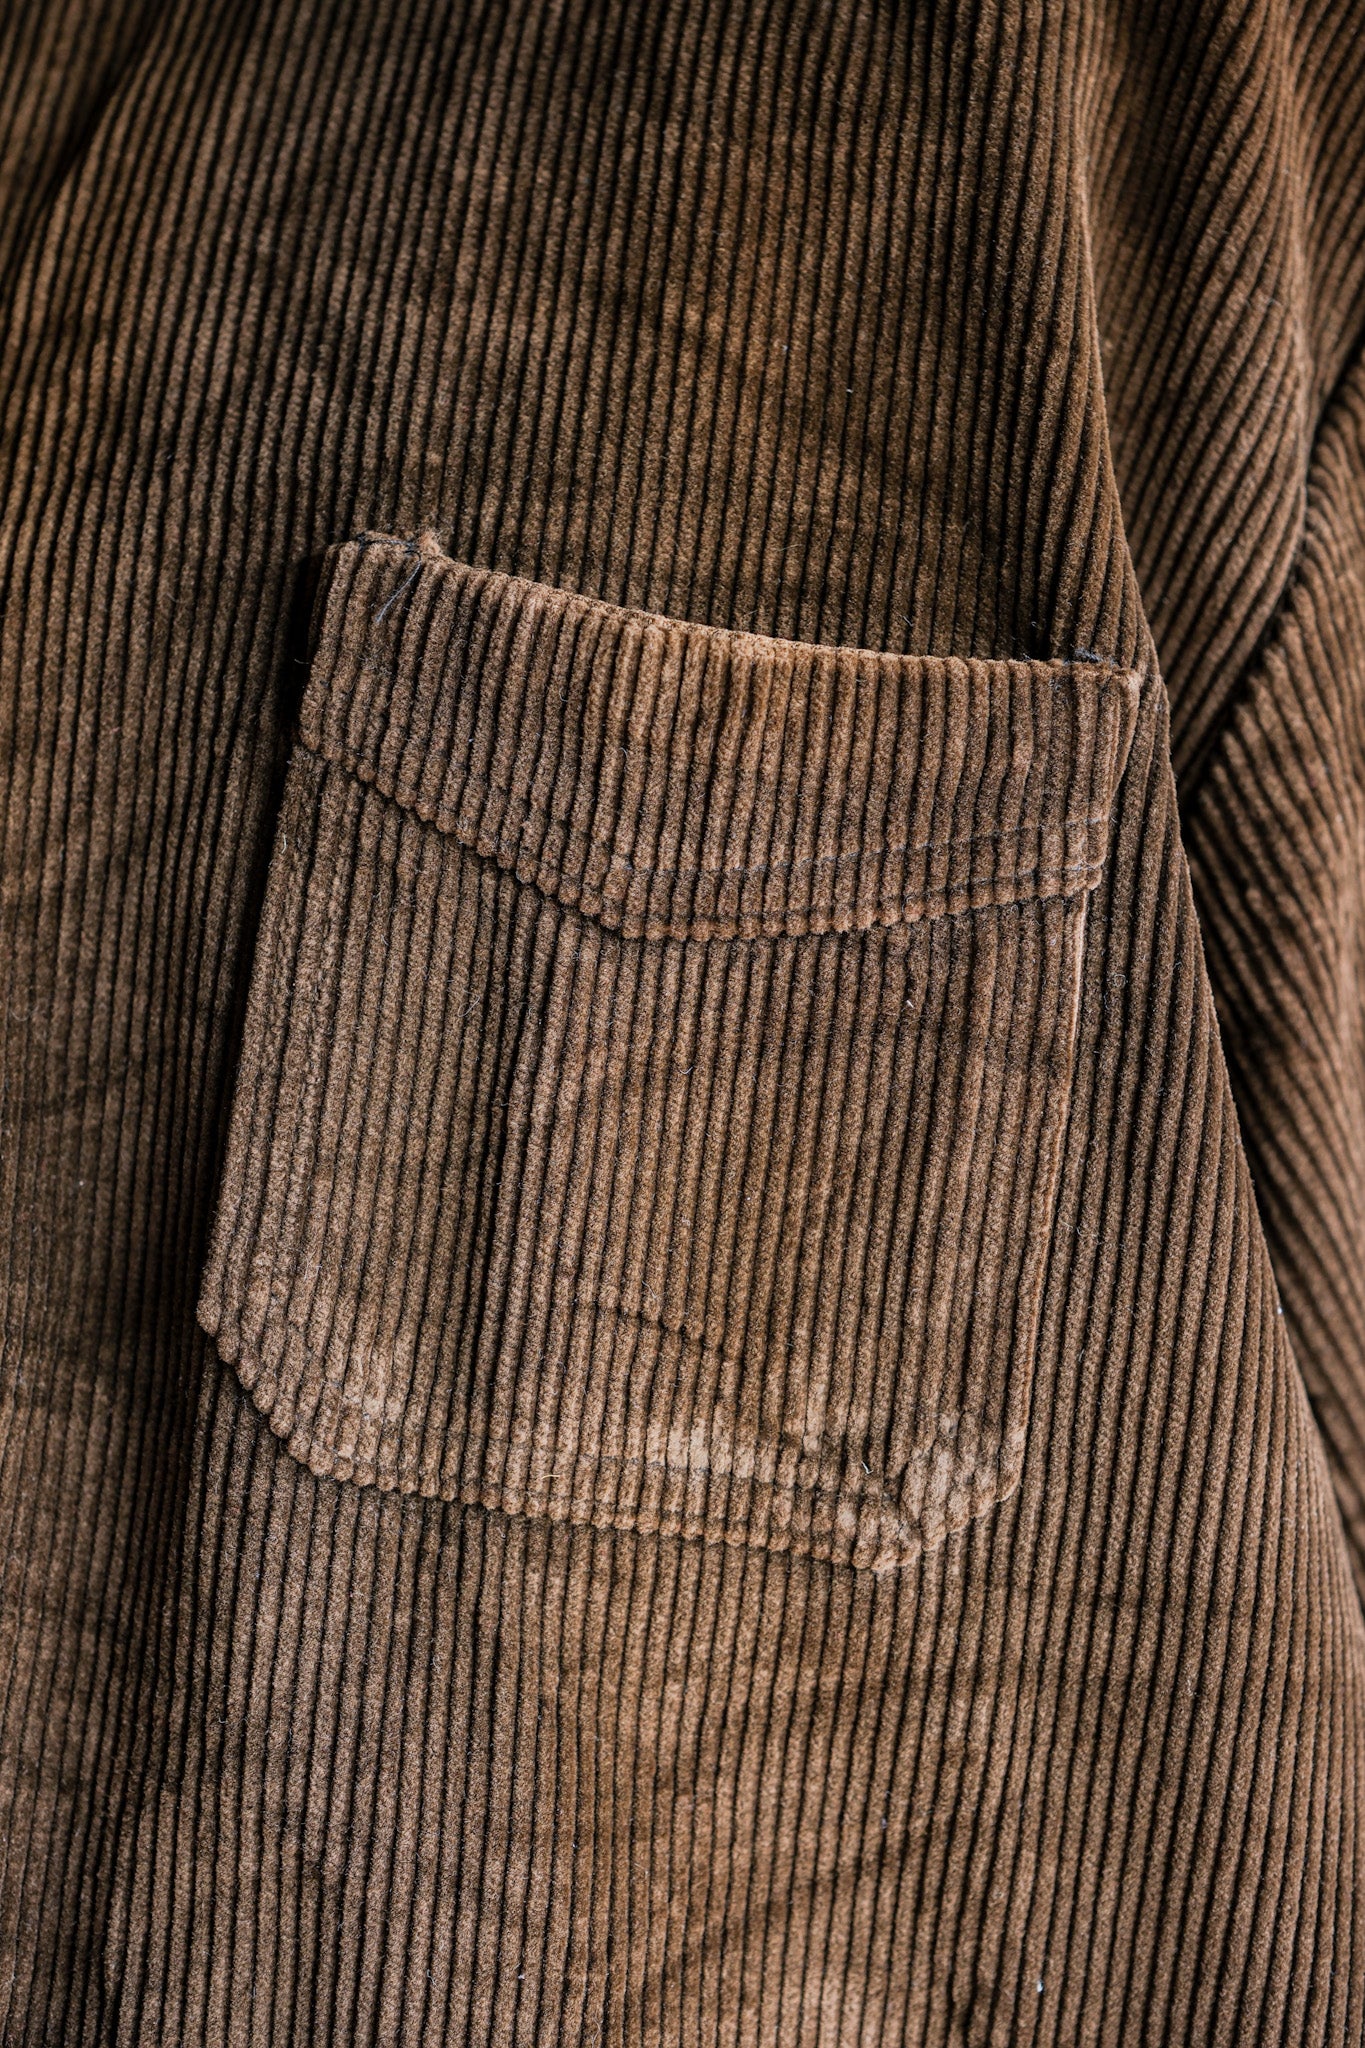 [~ 50 년대] 프랑스 빈티지 브라운 코듀로이 4 주머니 작업 재킷 크기.